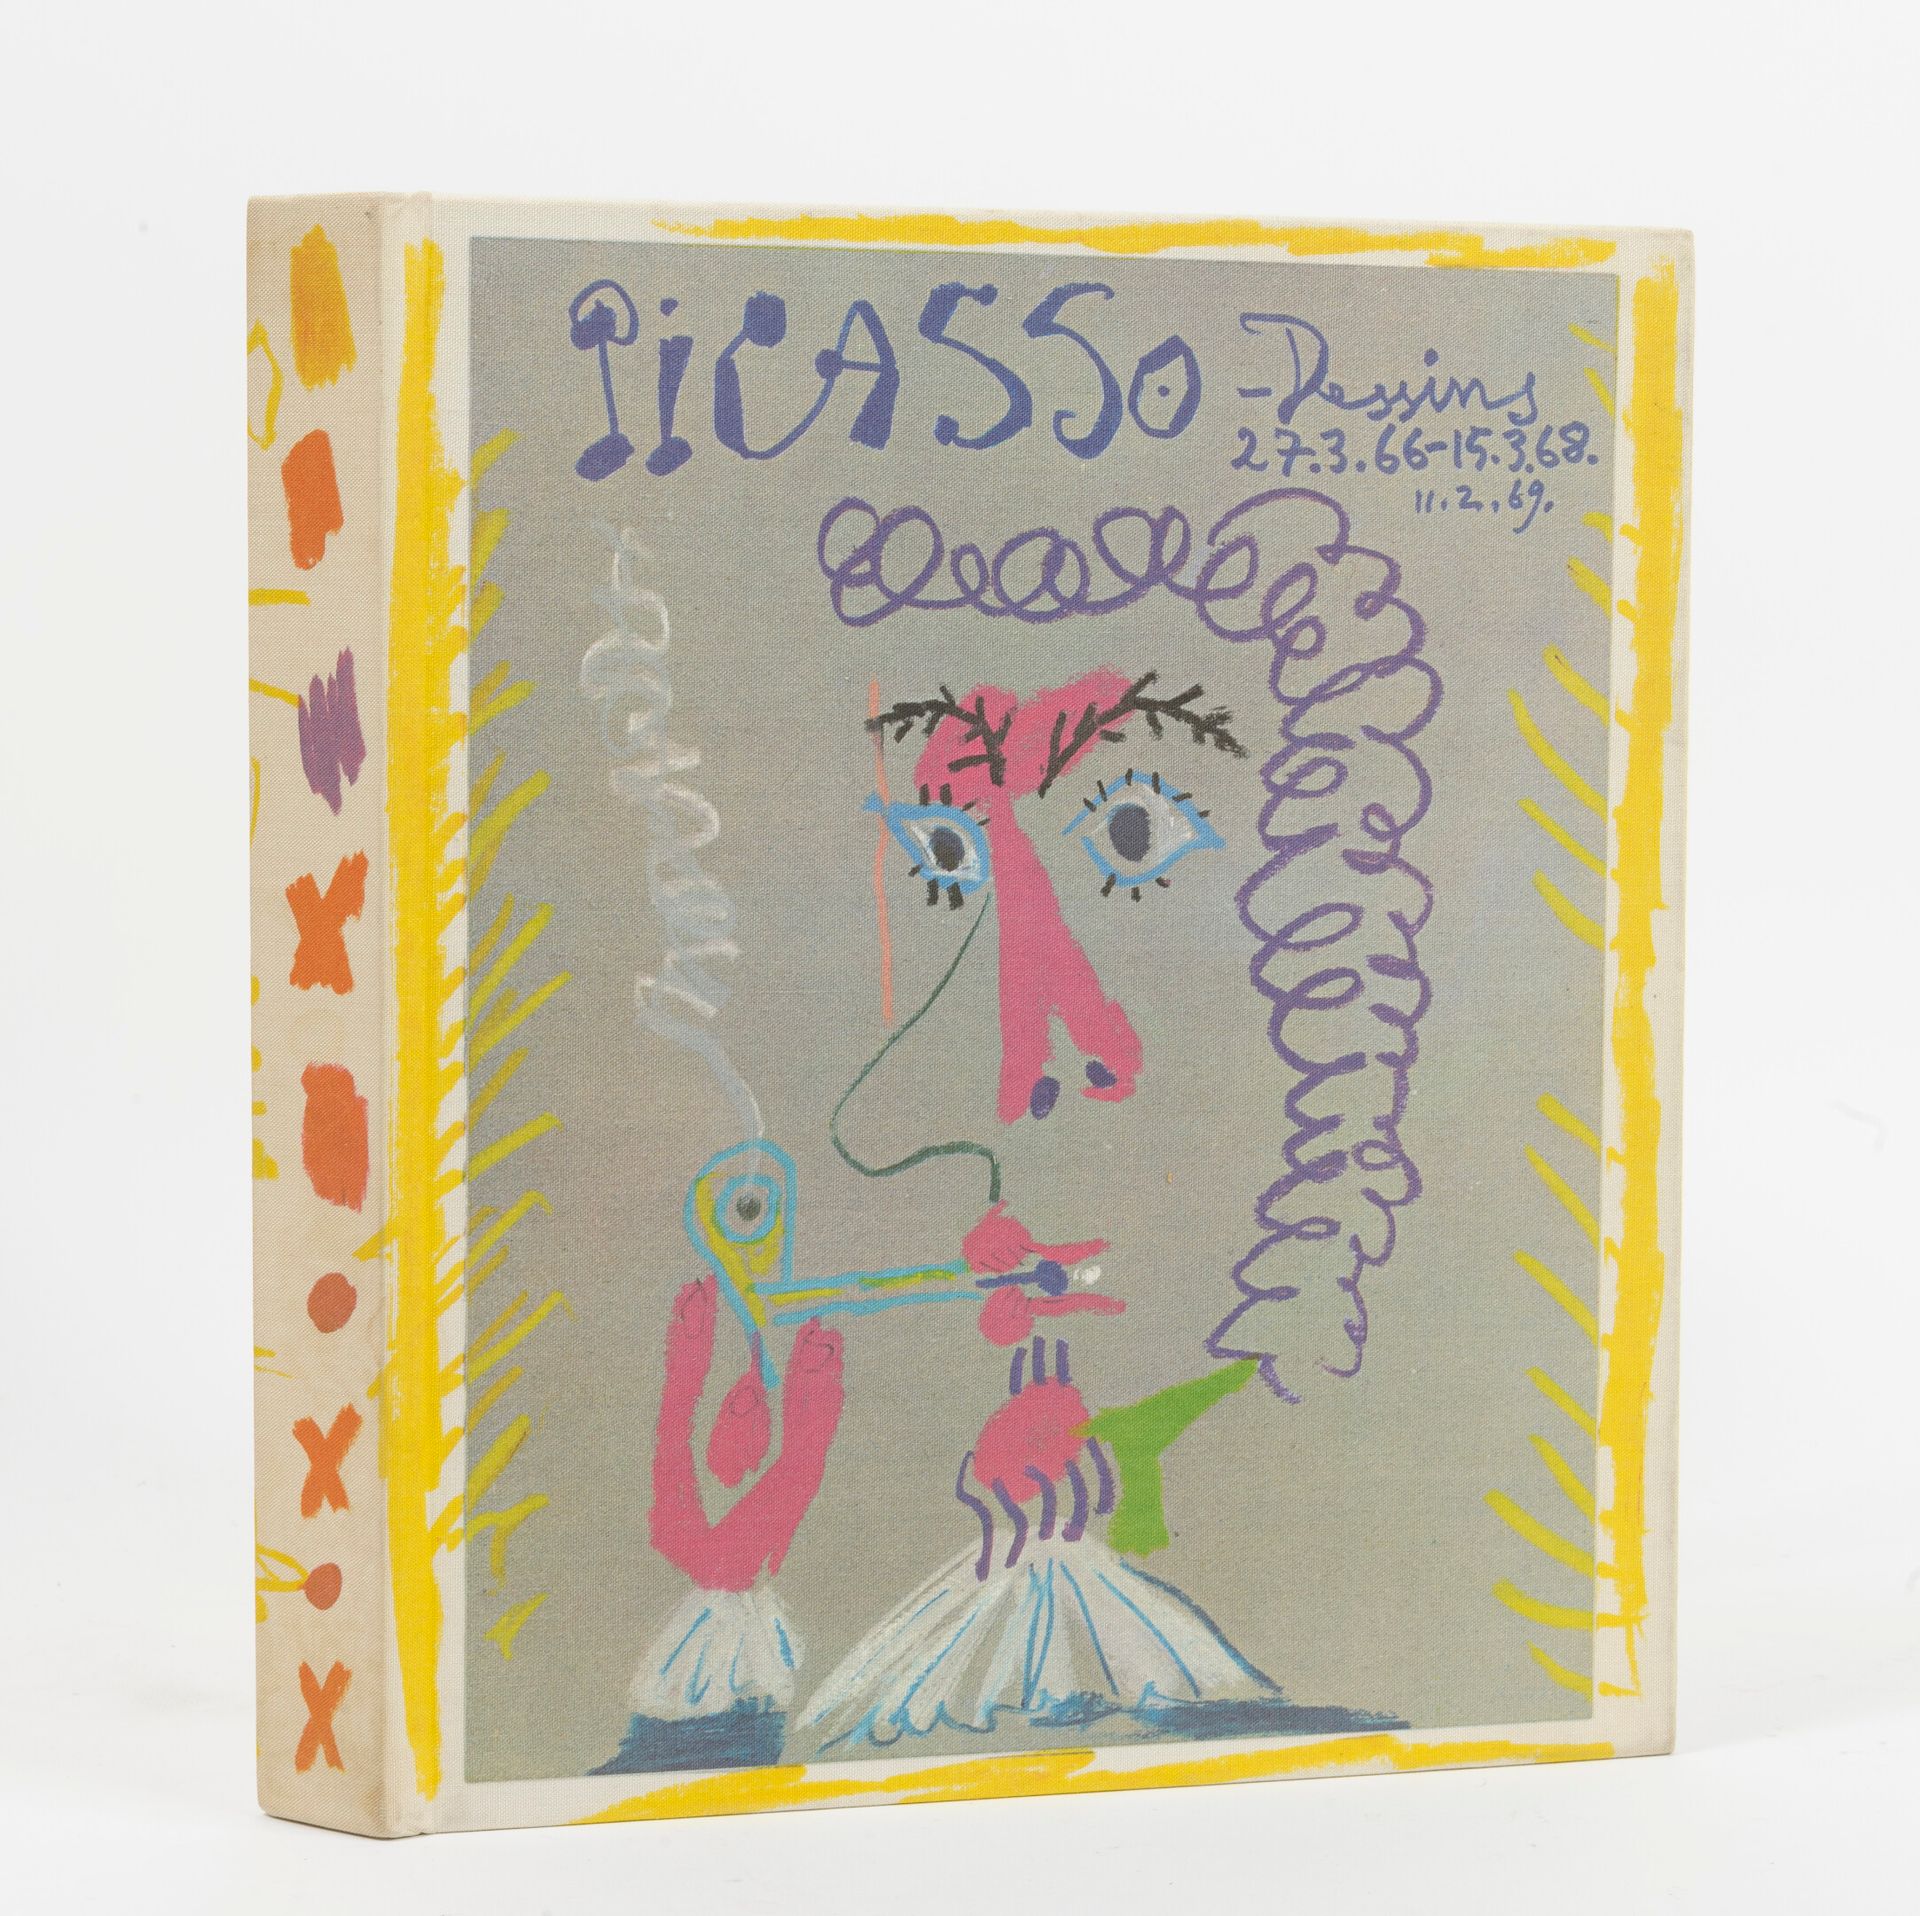 FELD, Charles Picasso, Los dibujos del 27.3.66 al 15.3.68. 

Prefacio de René Ch&hellip;